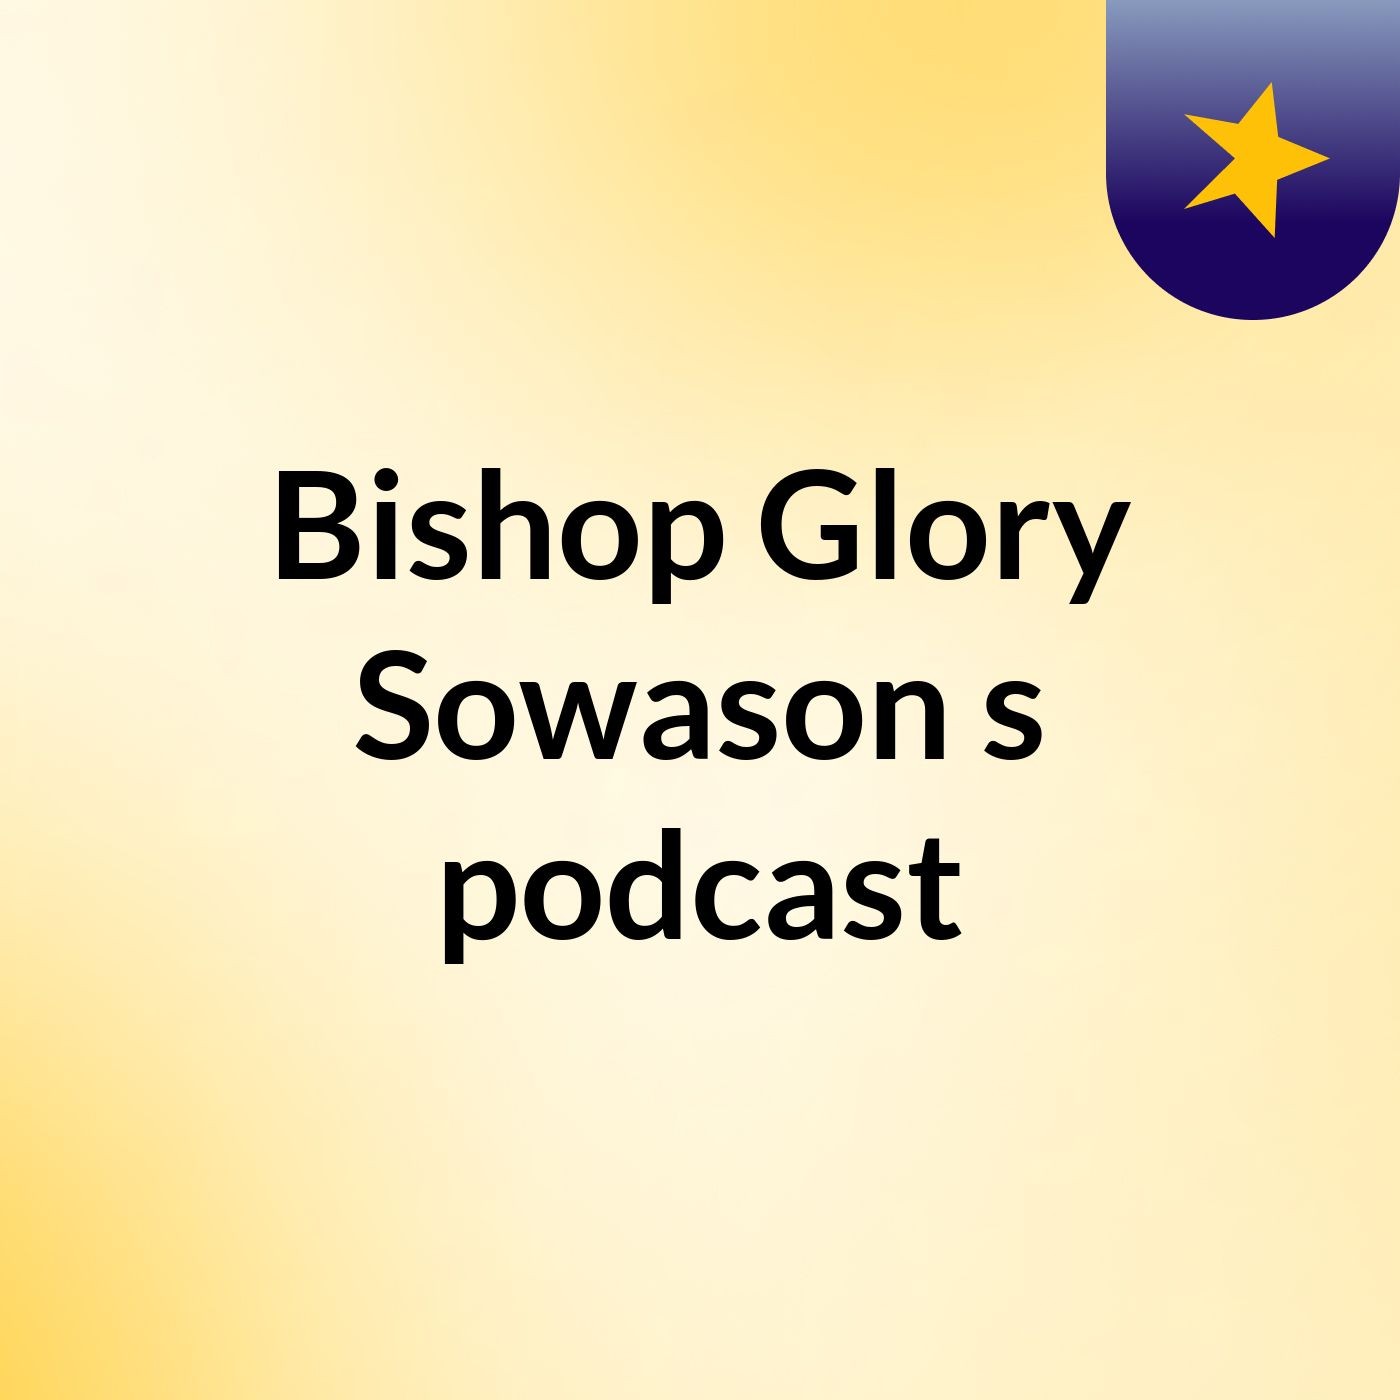 Bishop Glory Sowason's podcast